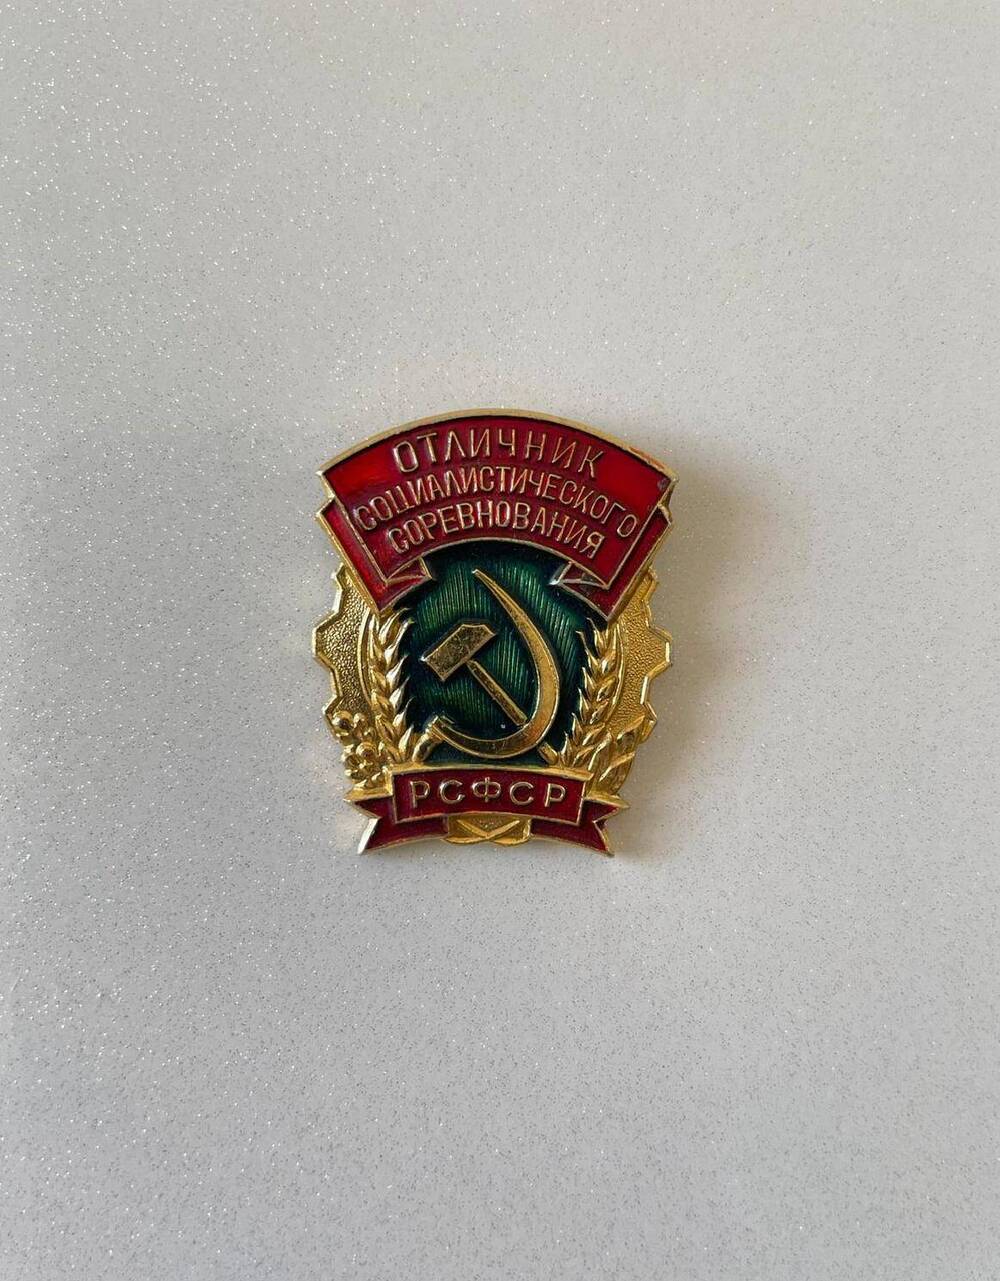 Значок Отличник социалистического соревнования РСФСР Макагона Алексея Ефимовича.